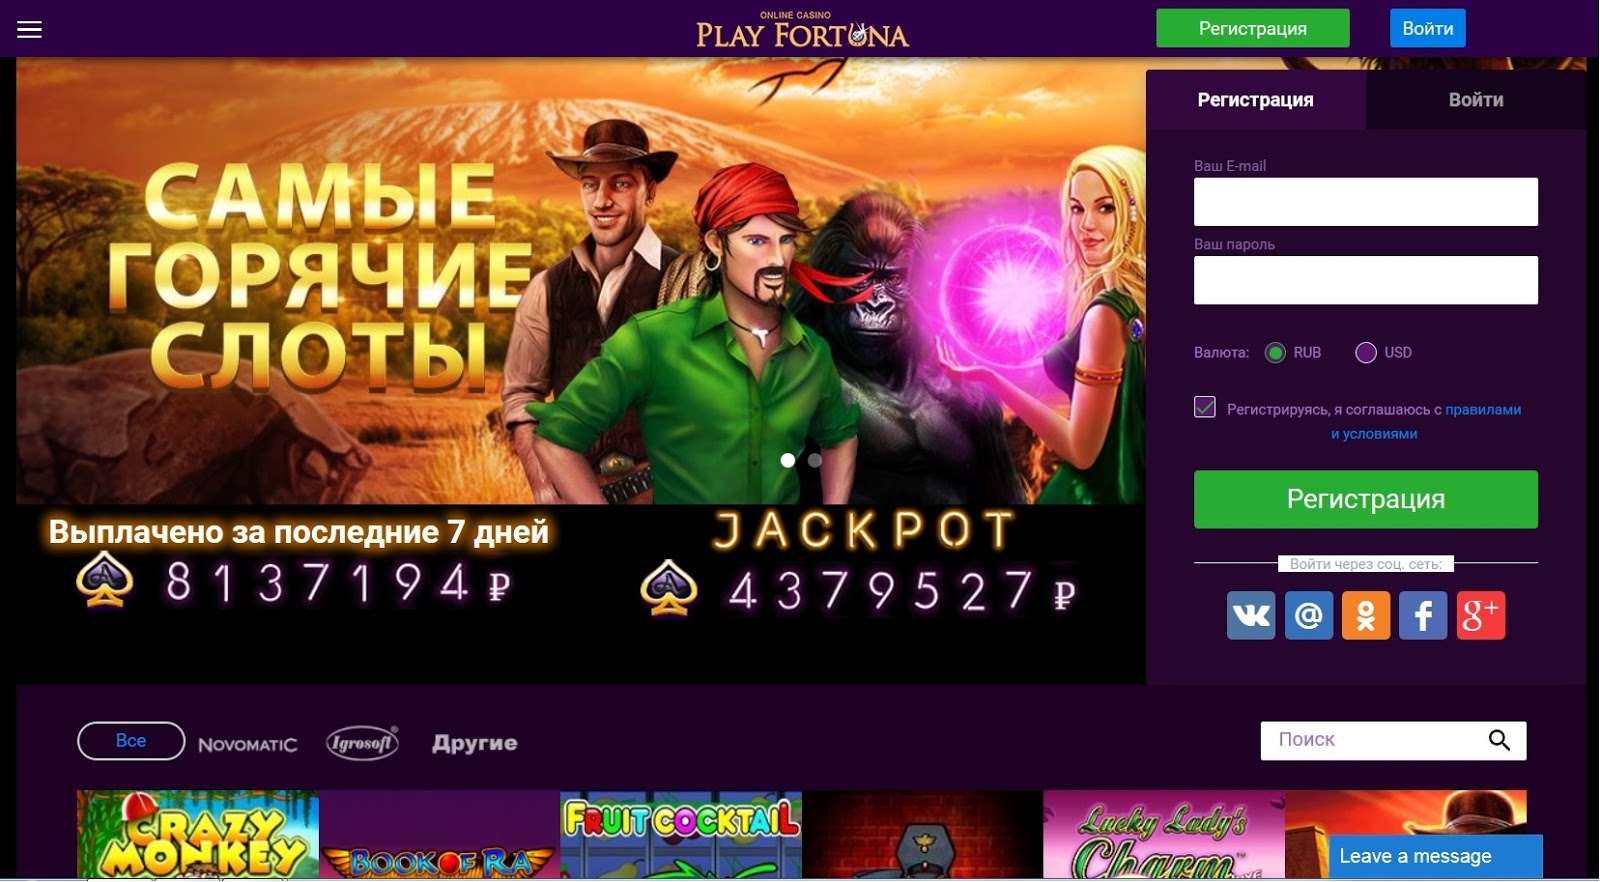 Плей фортуна официальный сайт play fortuna casino джойказино зеркало на сегодня 777joycasino1 com ru